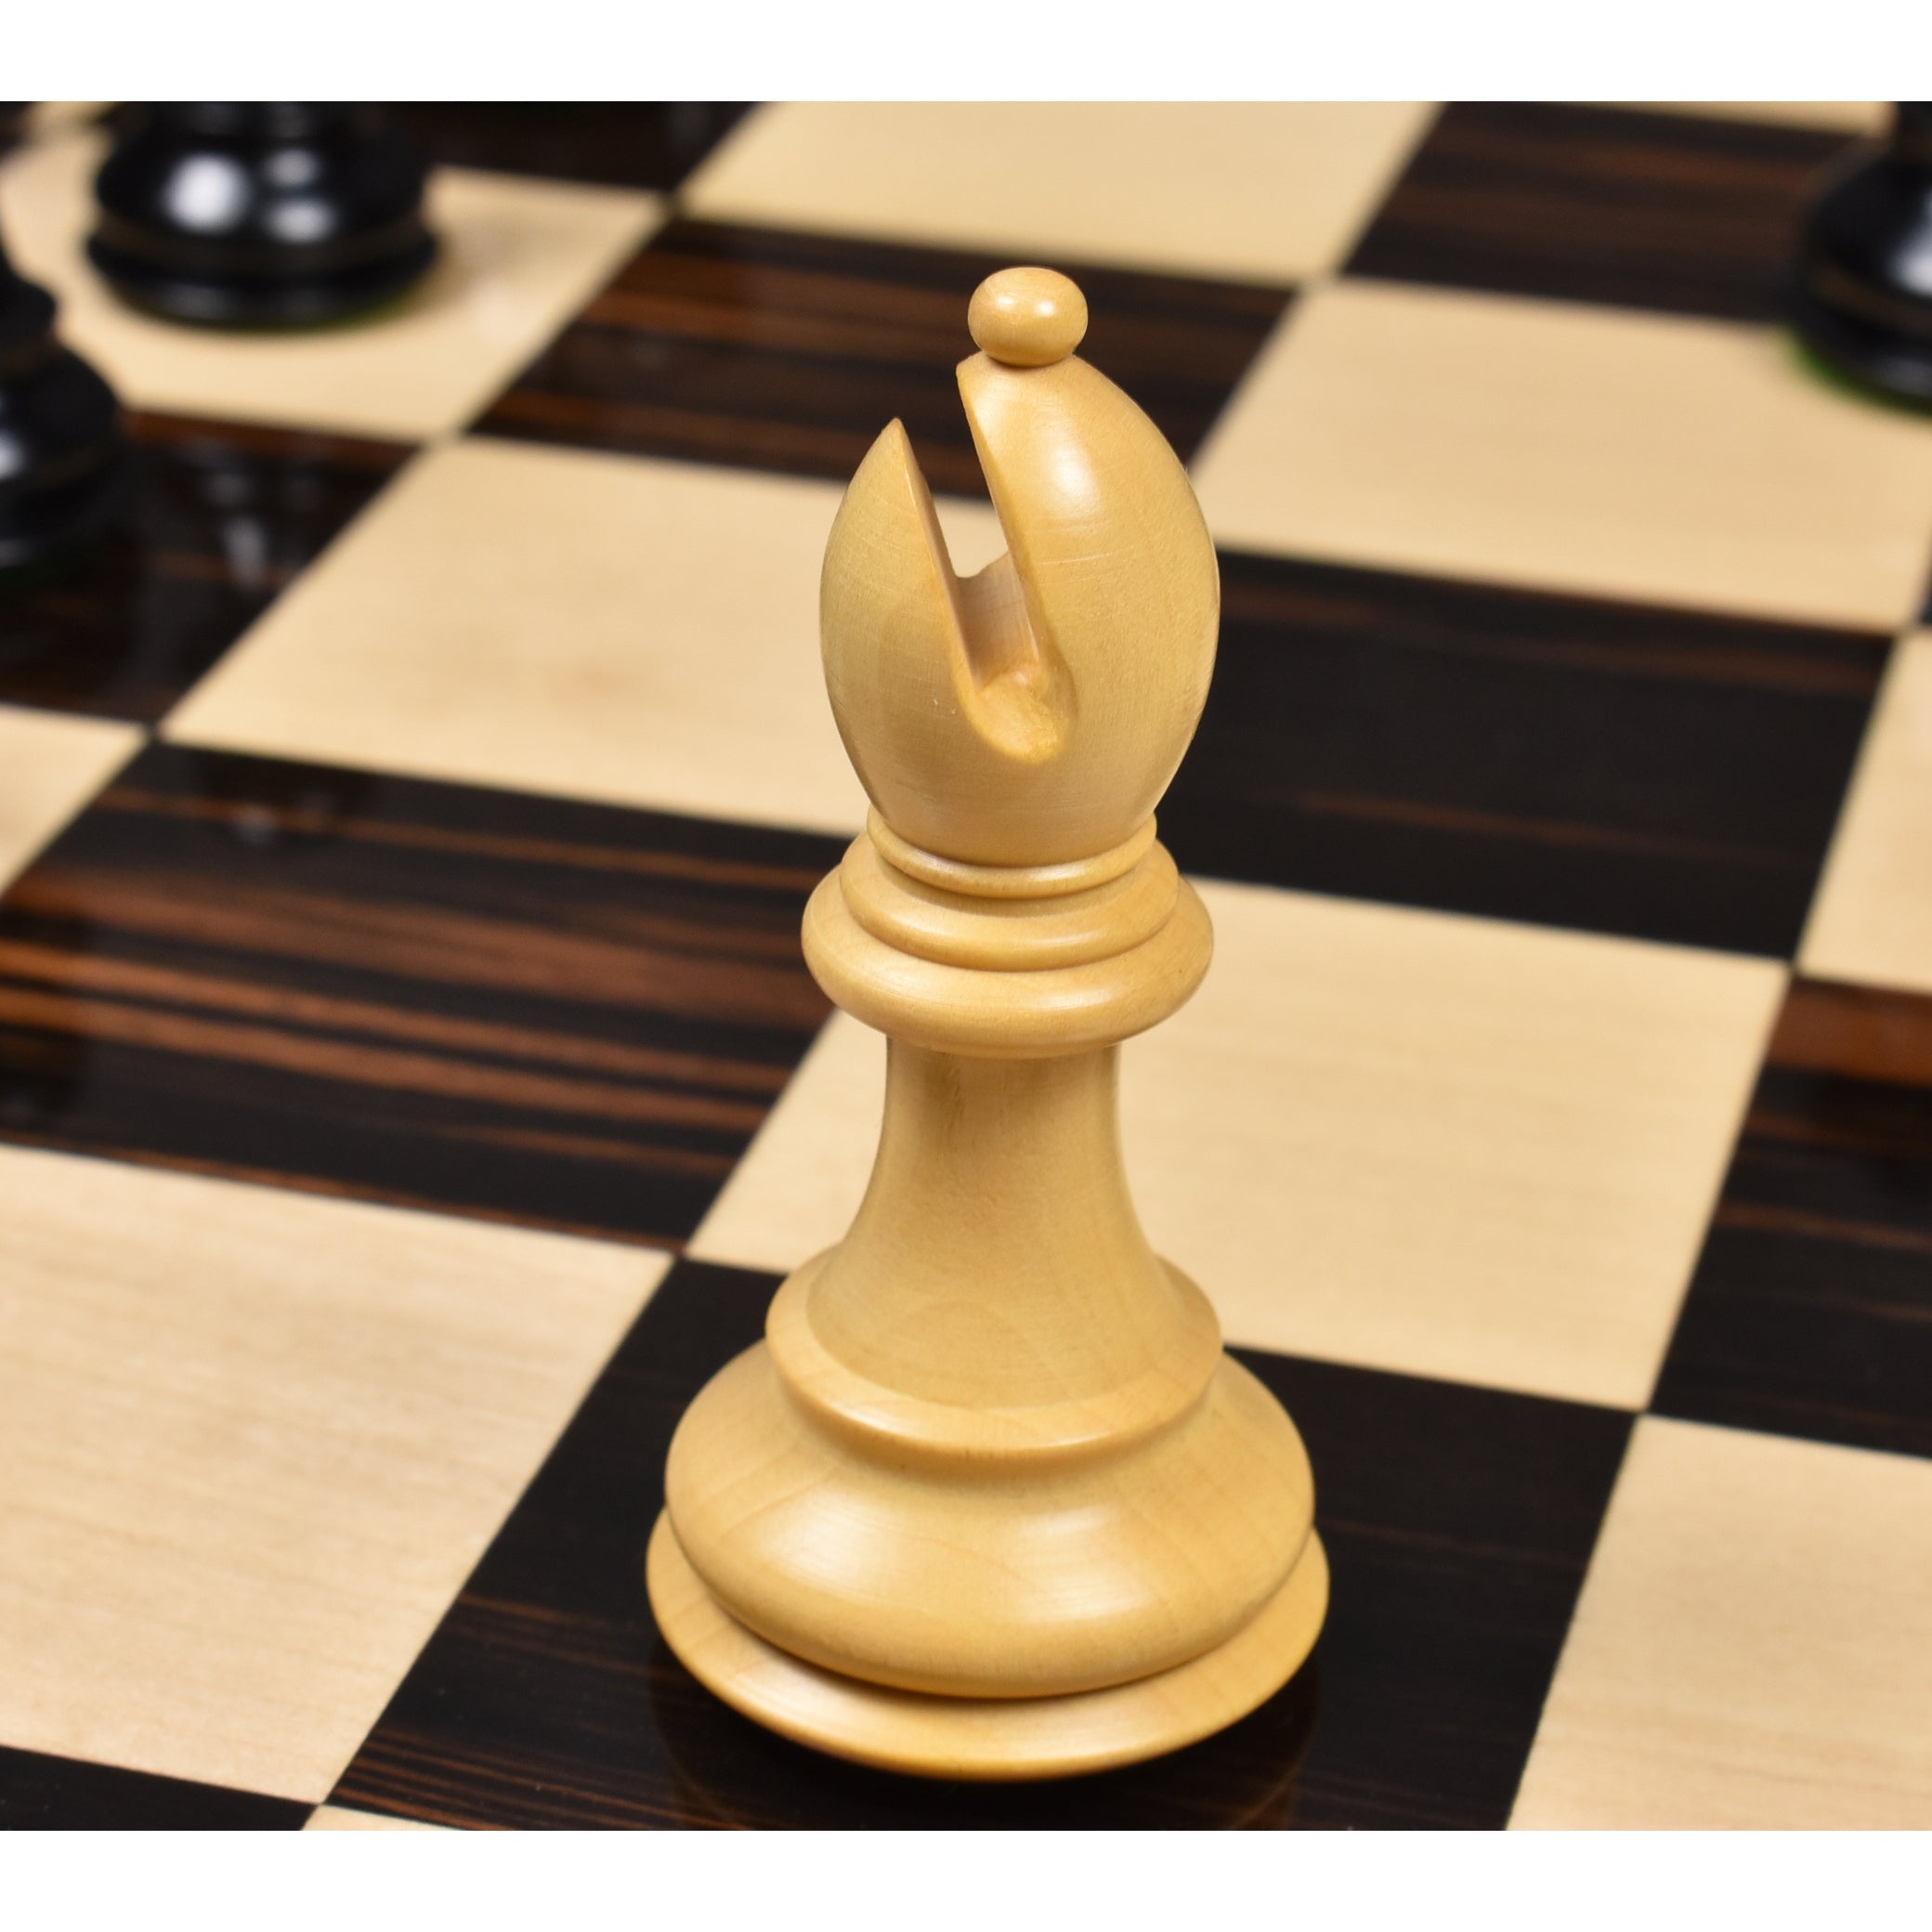 Estancamiento: ¿Cómo avanzar en ajedrez? Edición 100 a 1200 puntos de Elo 